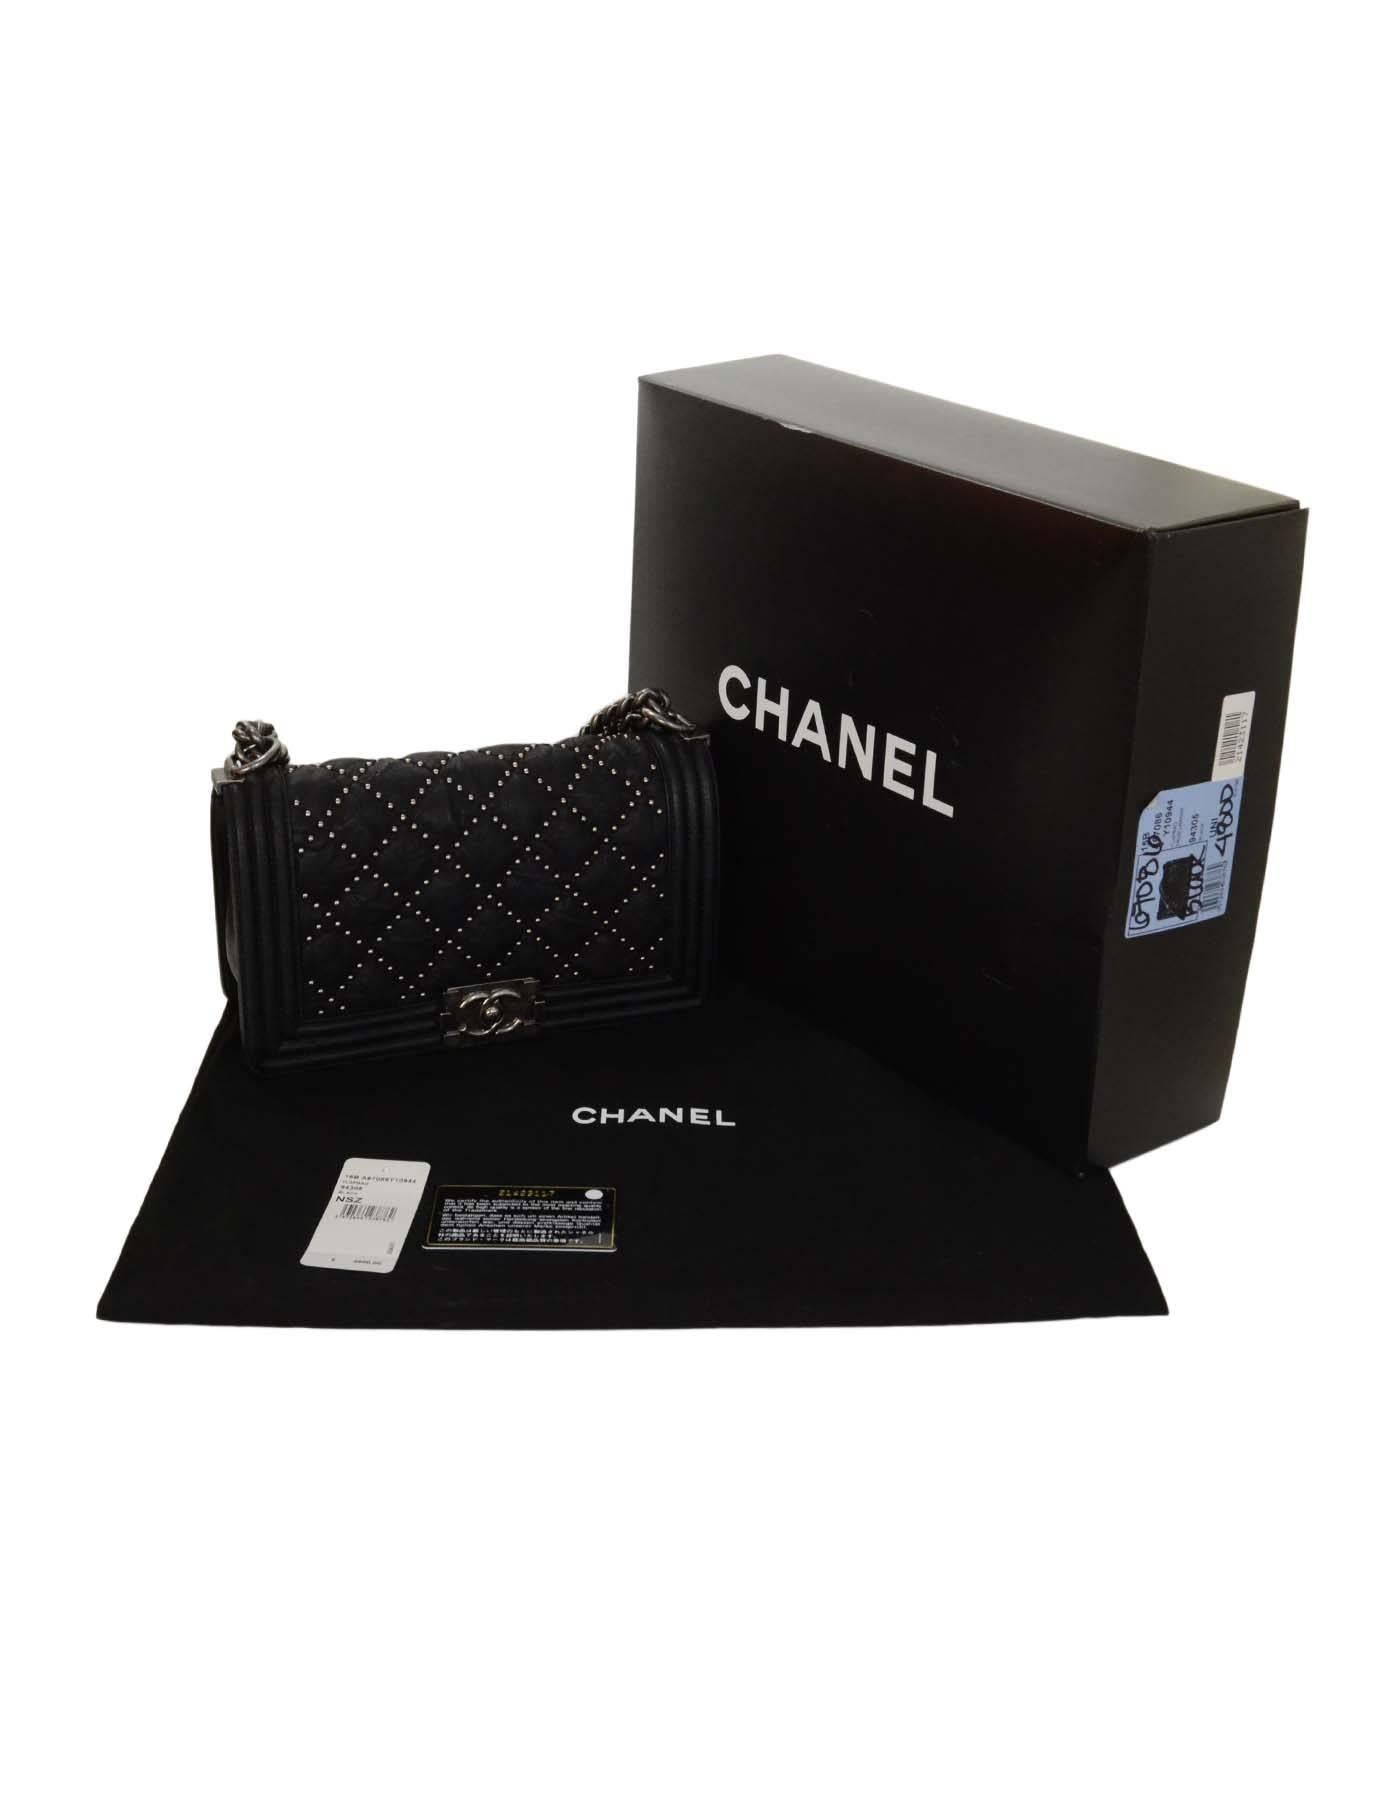 Chanel Limited Edition Black Distressed Leather Studded Medium Boy Bag SHW 1